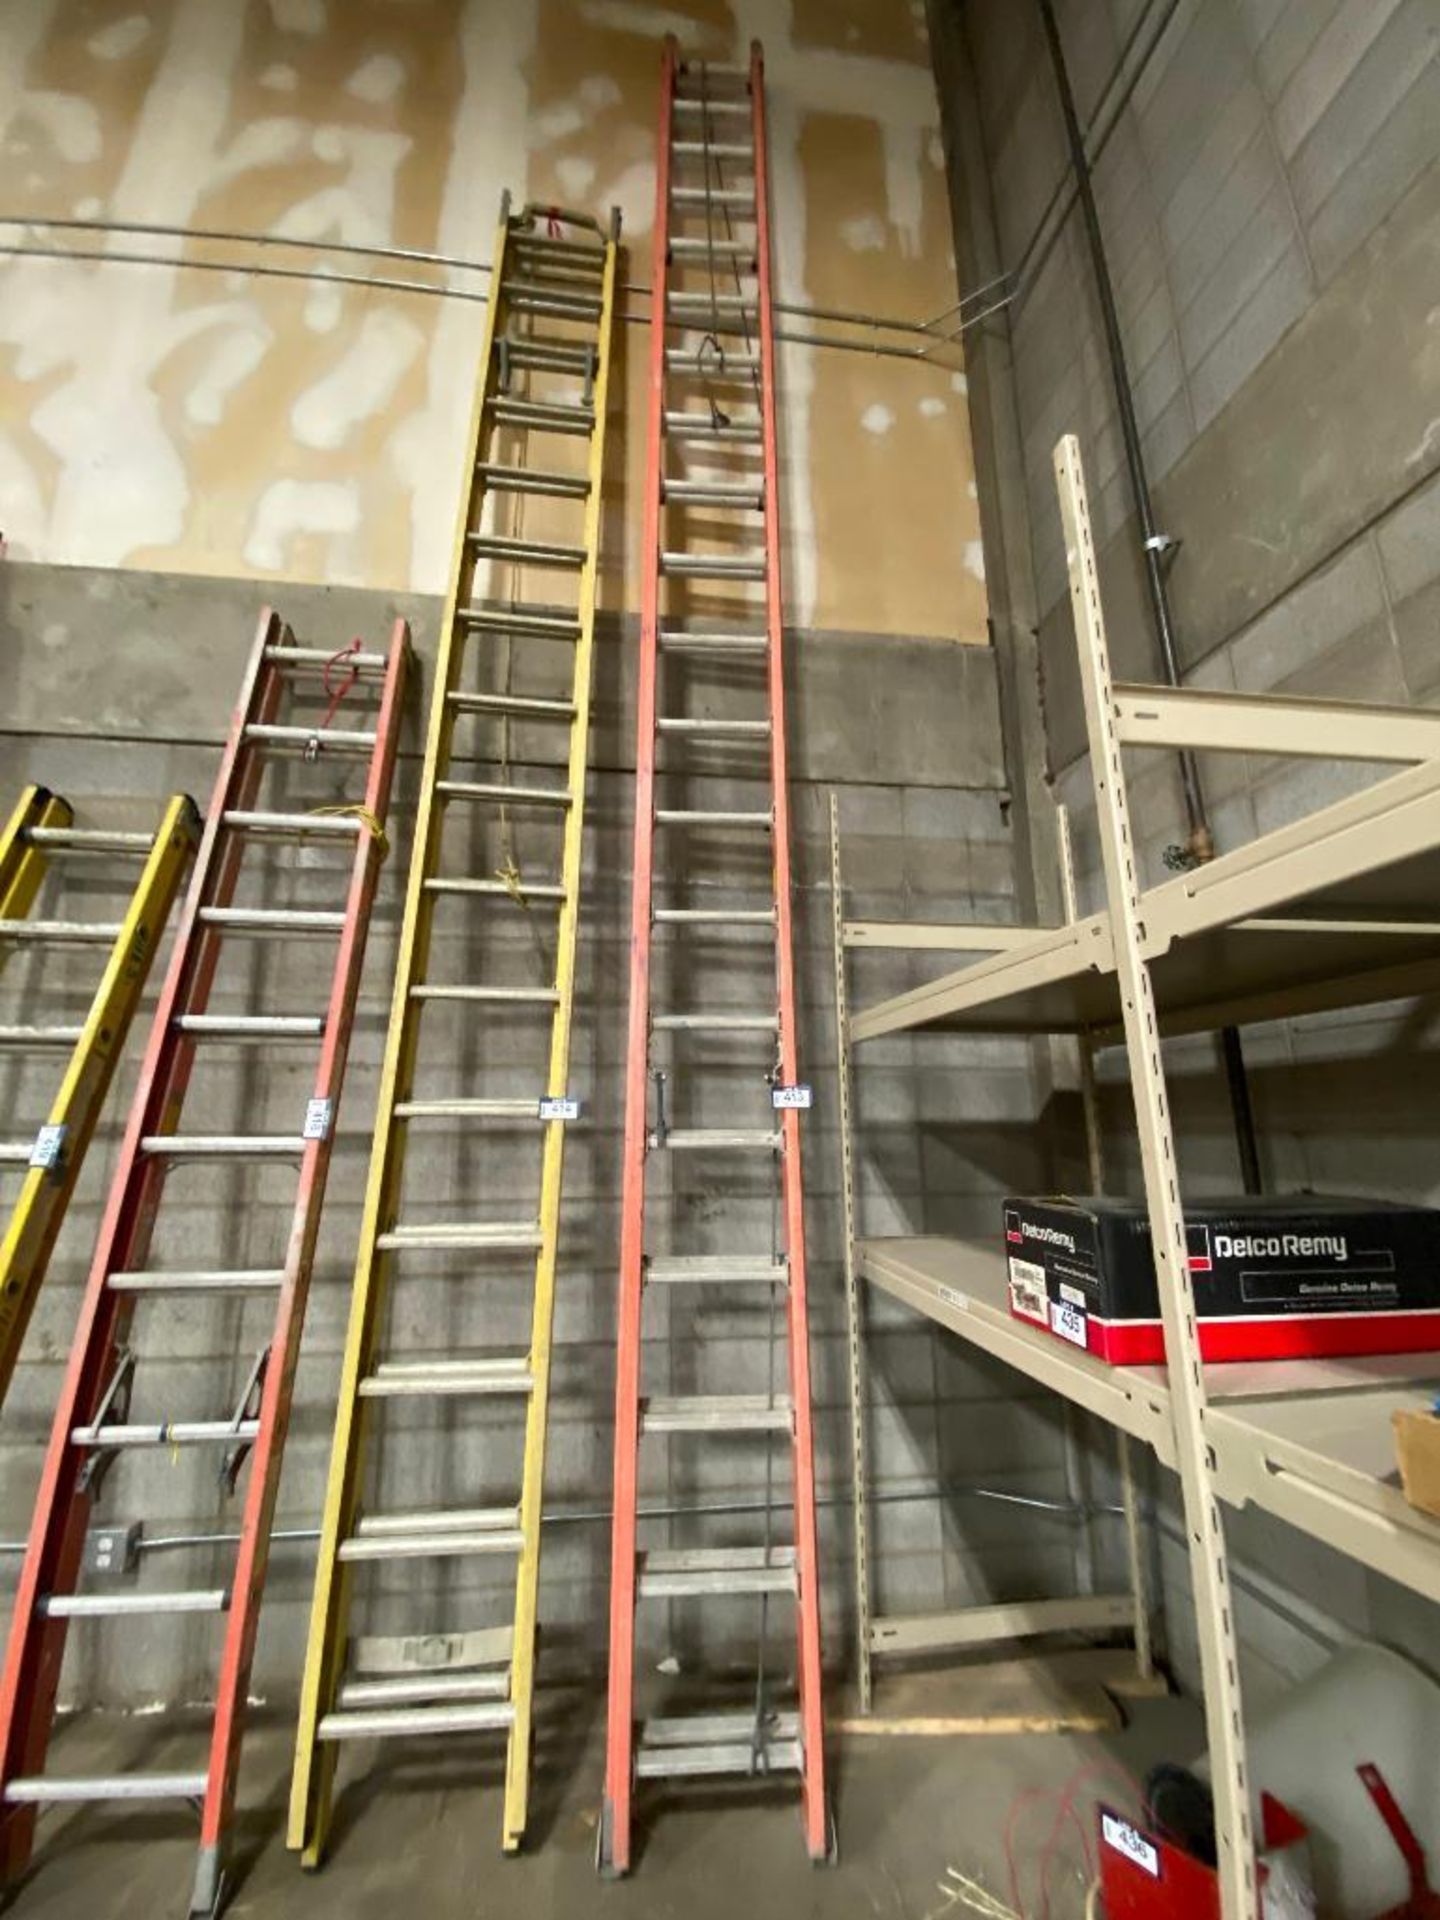 Louisville 40' Fiberglass Extension Ladder